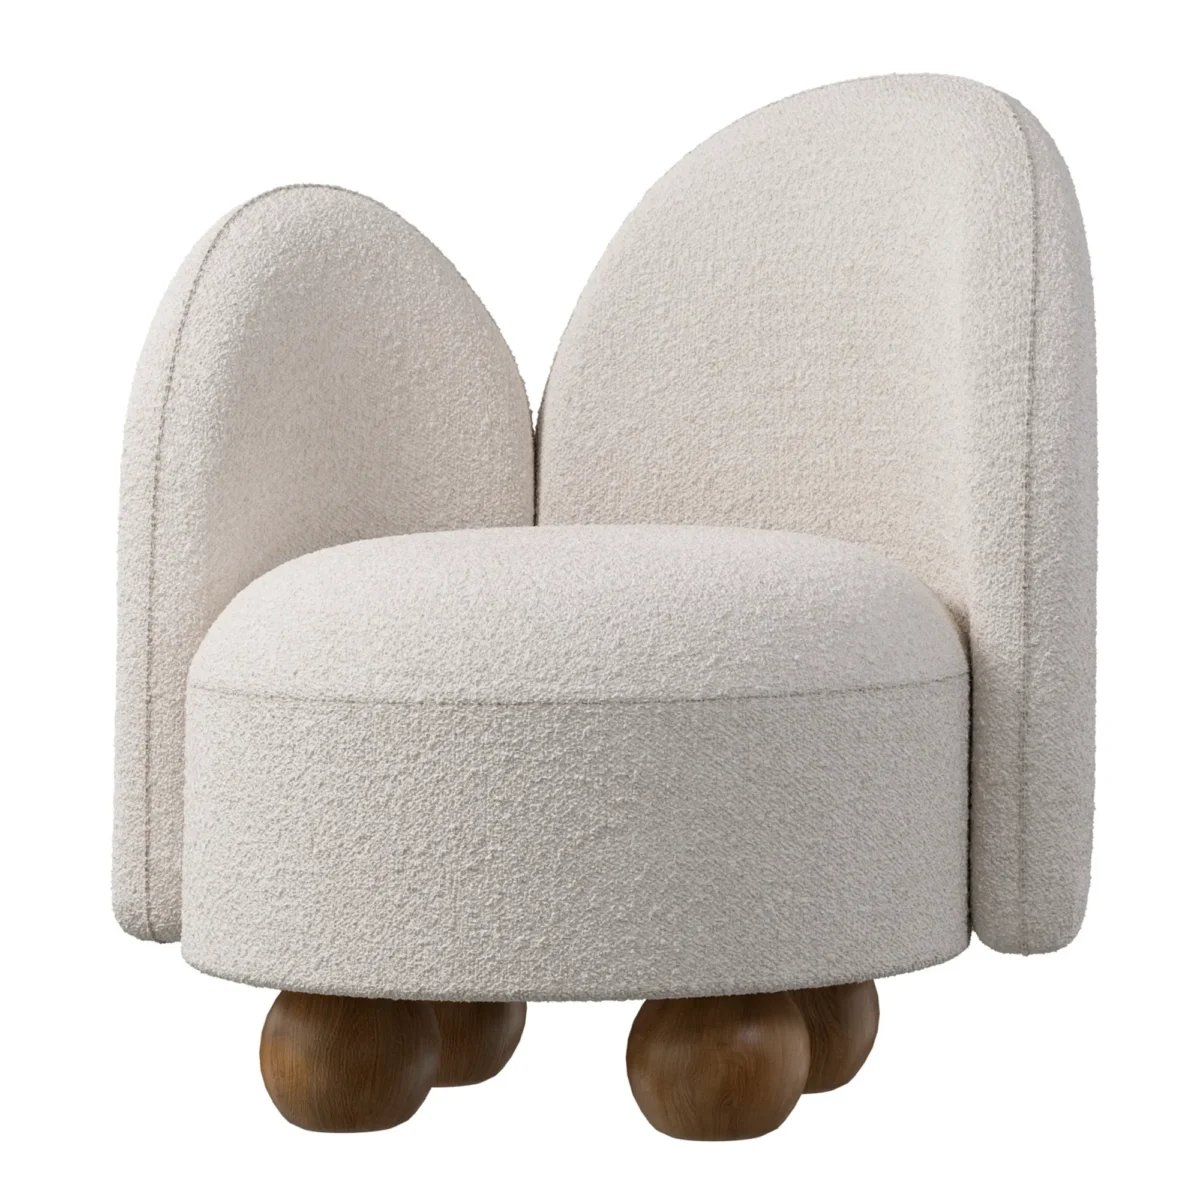 Кресло для гостинной White Wooden Balls 3D модель скачать в формате 3ds max и CoronaRender